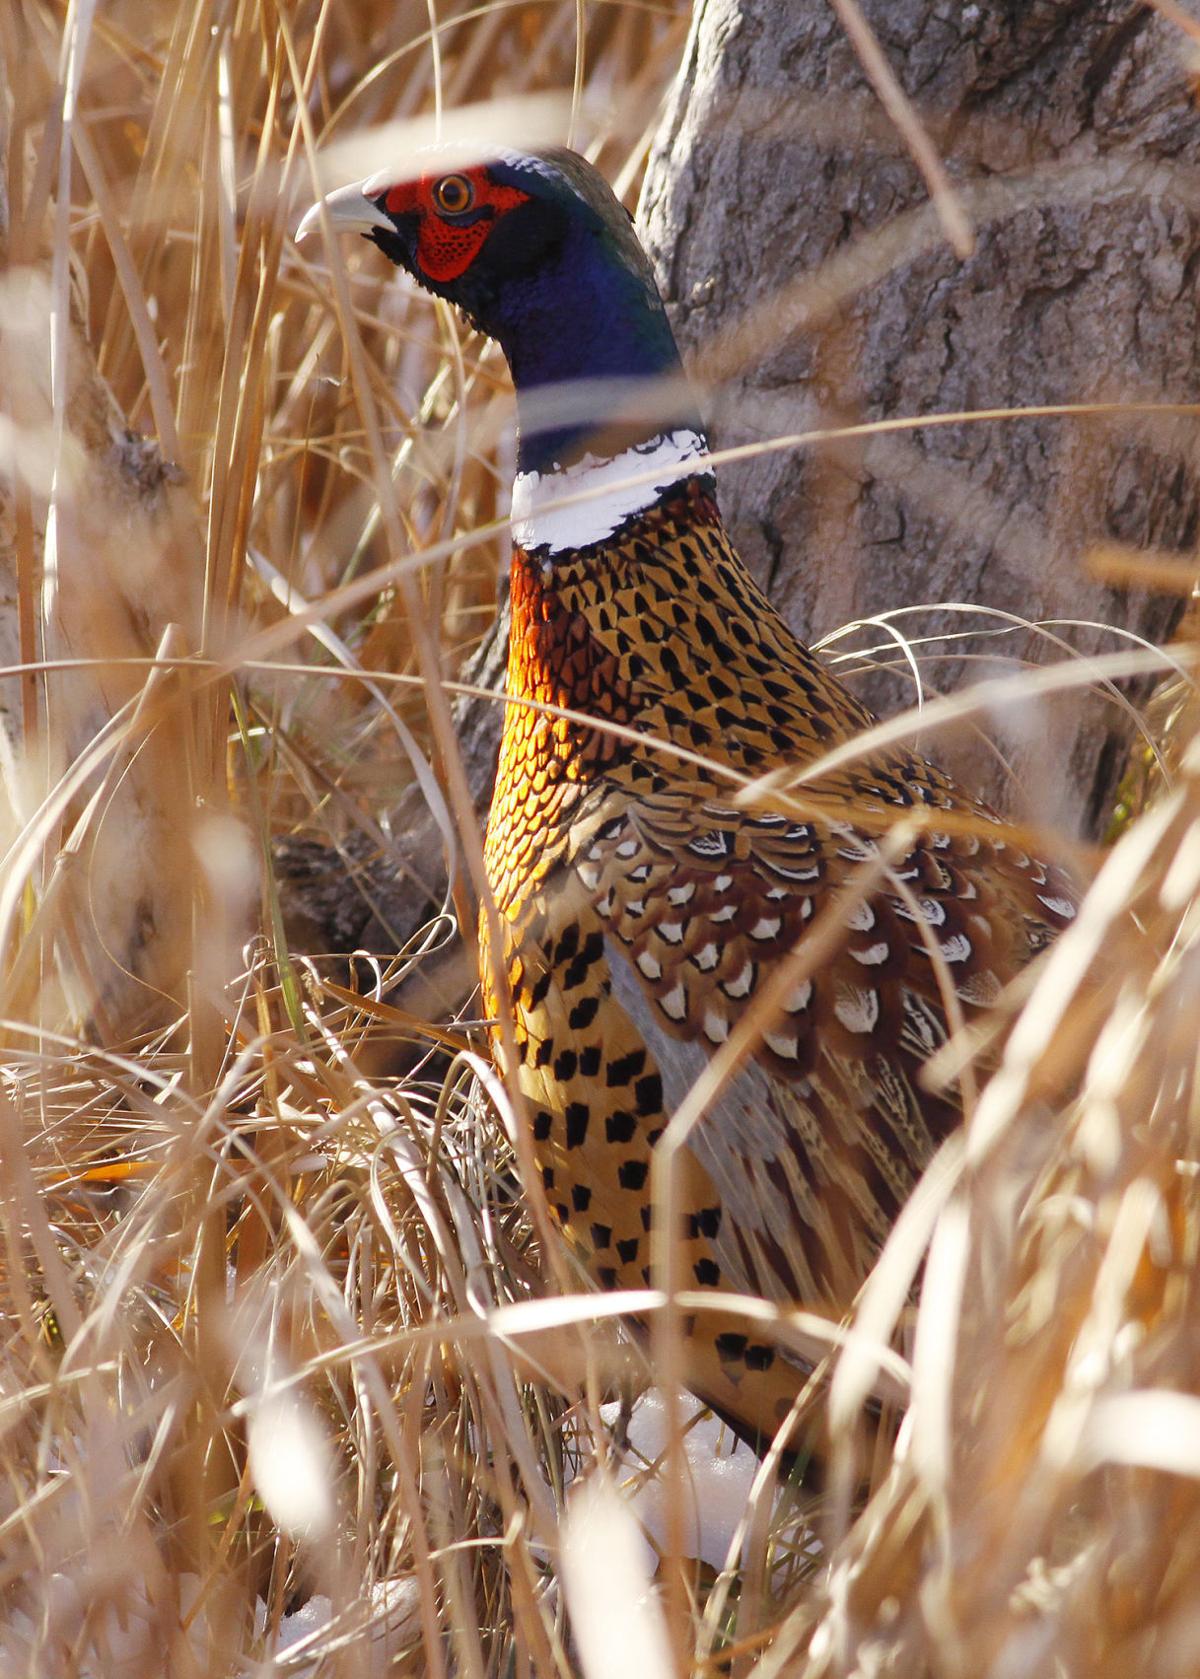 Pheasant numbers are down in North Dakota | North Dakota News ...